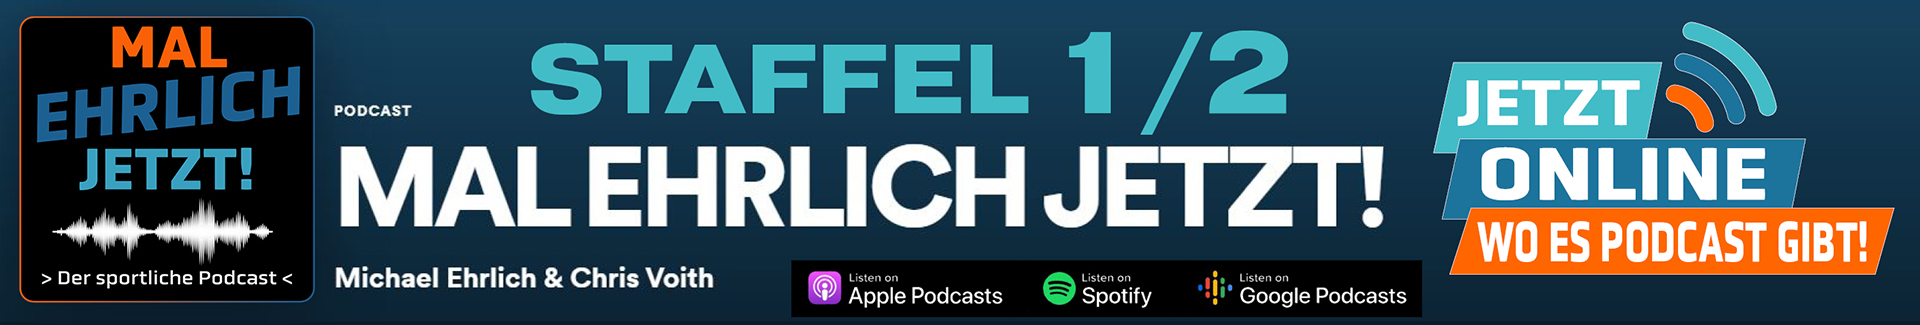 Podcast-Mal-Ehrlich-Jetzt